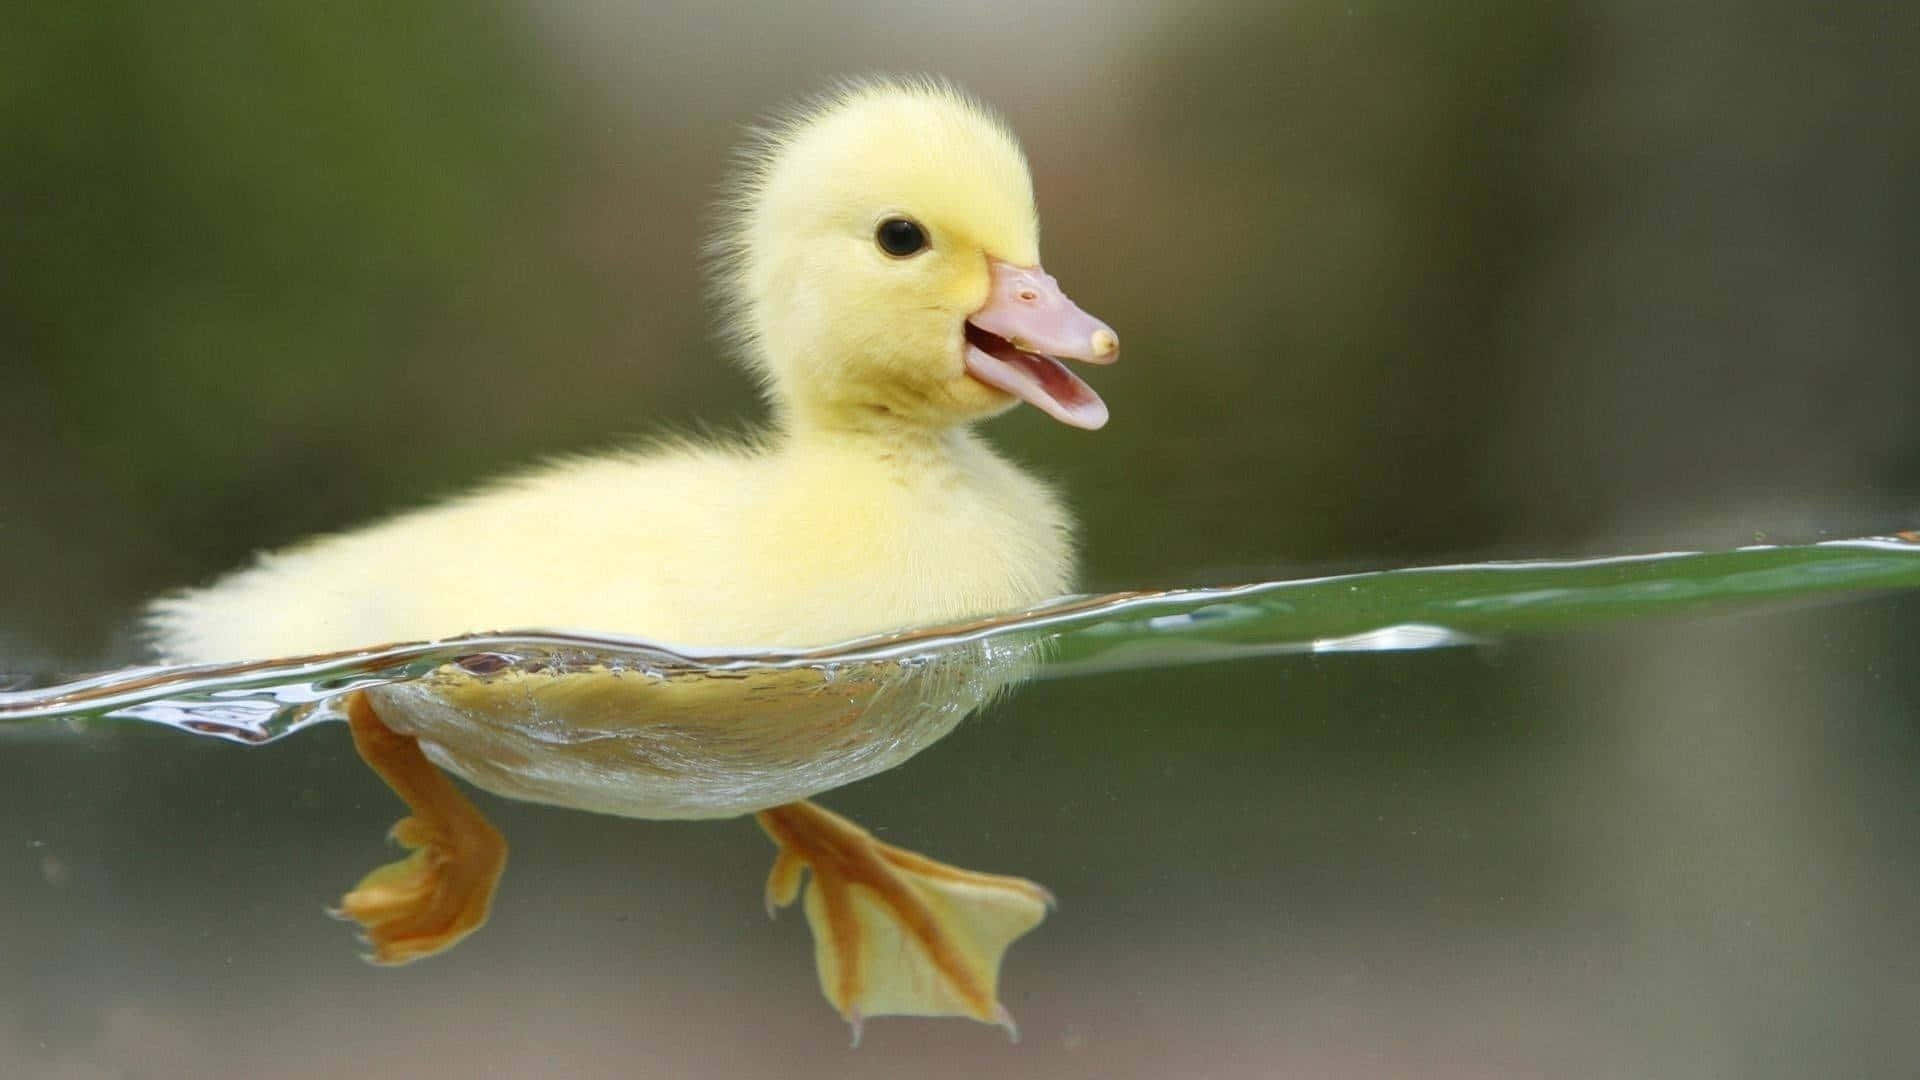 "Enjoy a Little Quack"